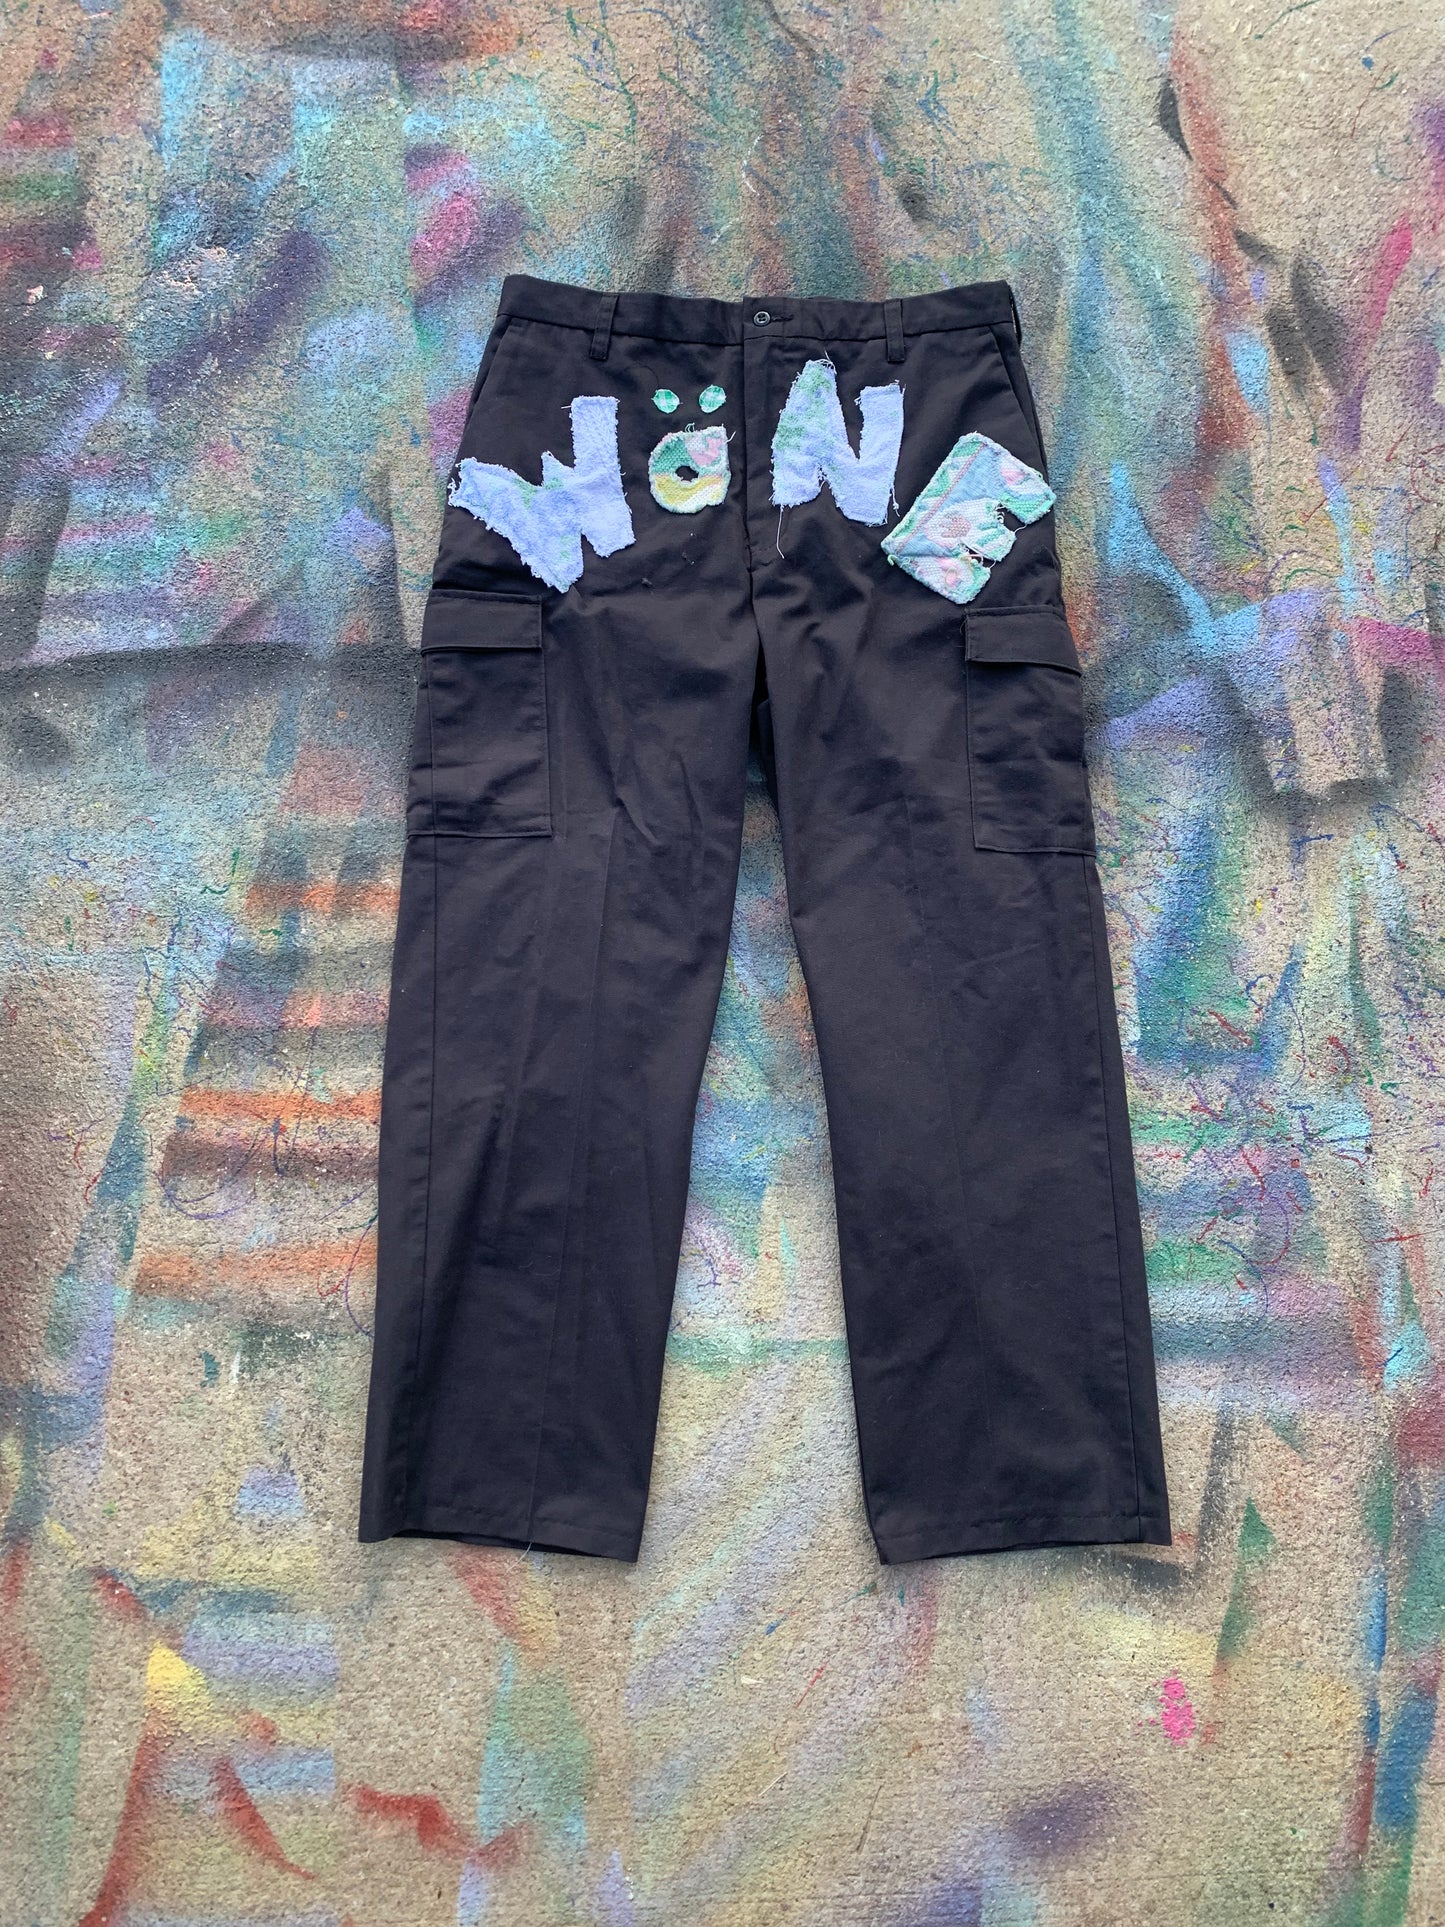 (LS) Wäne Wear Cargo Pants (Multicolor/Dark Grey) -34/30